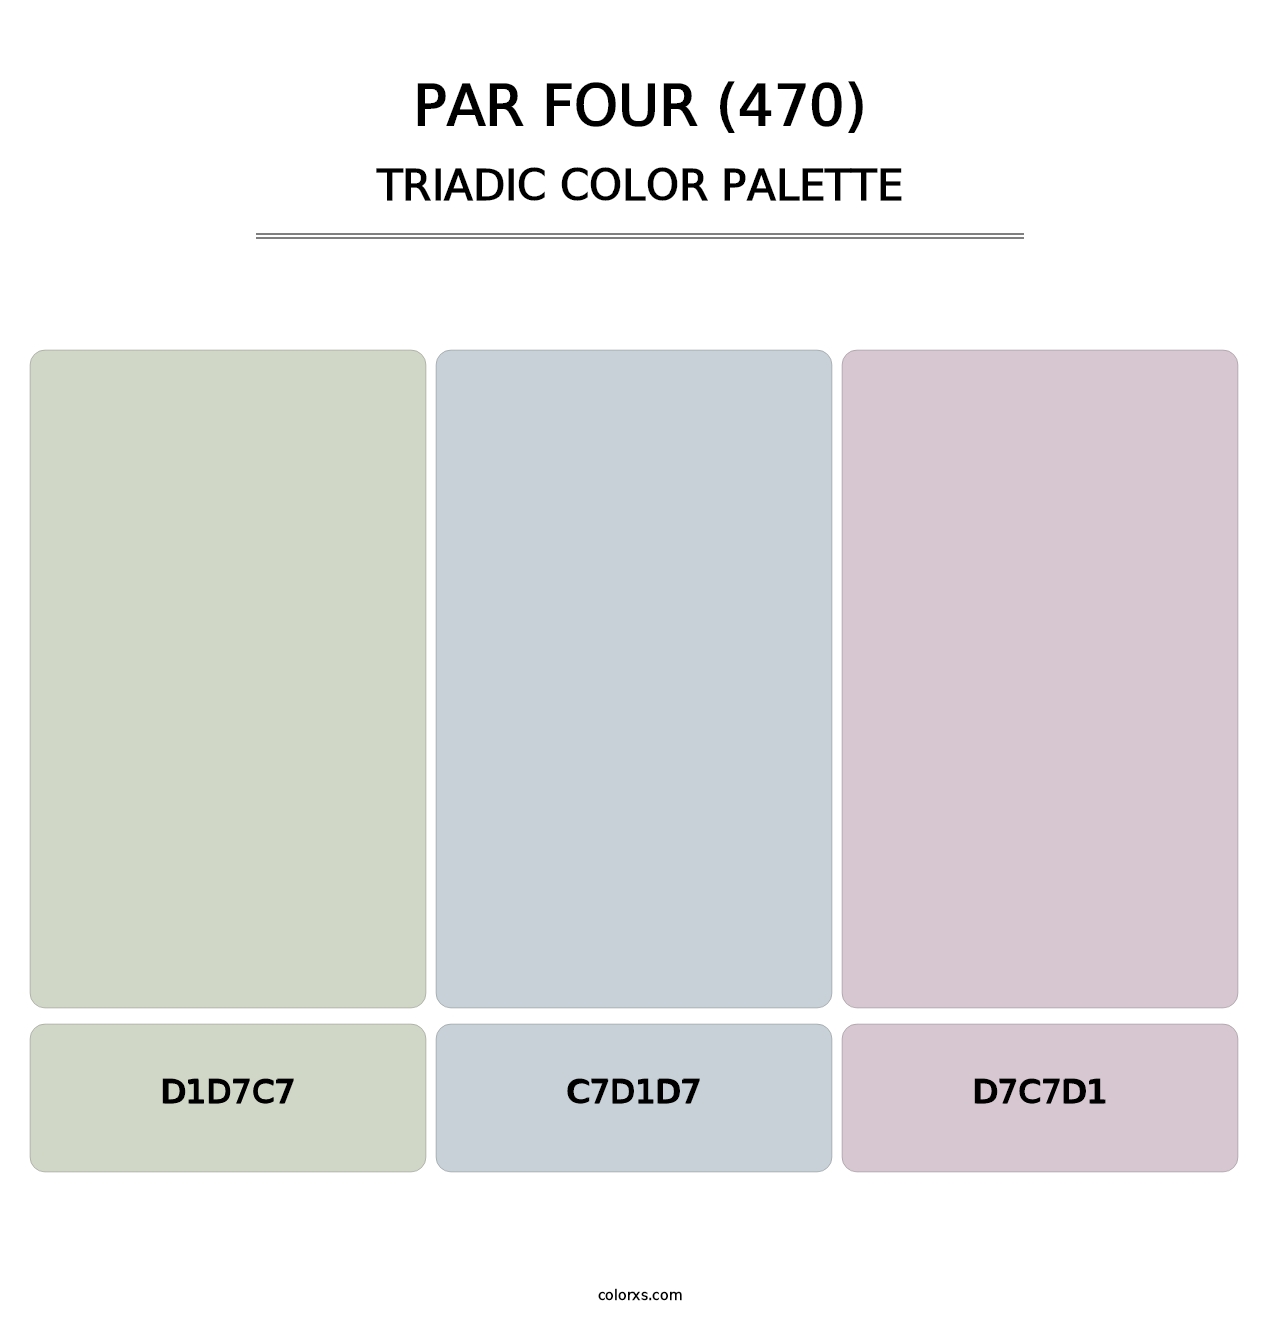 Par Four (470) - Triadic Color Palette